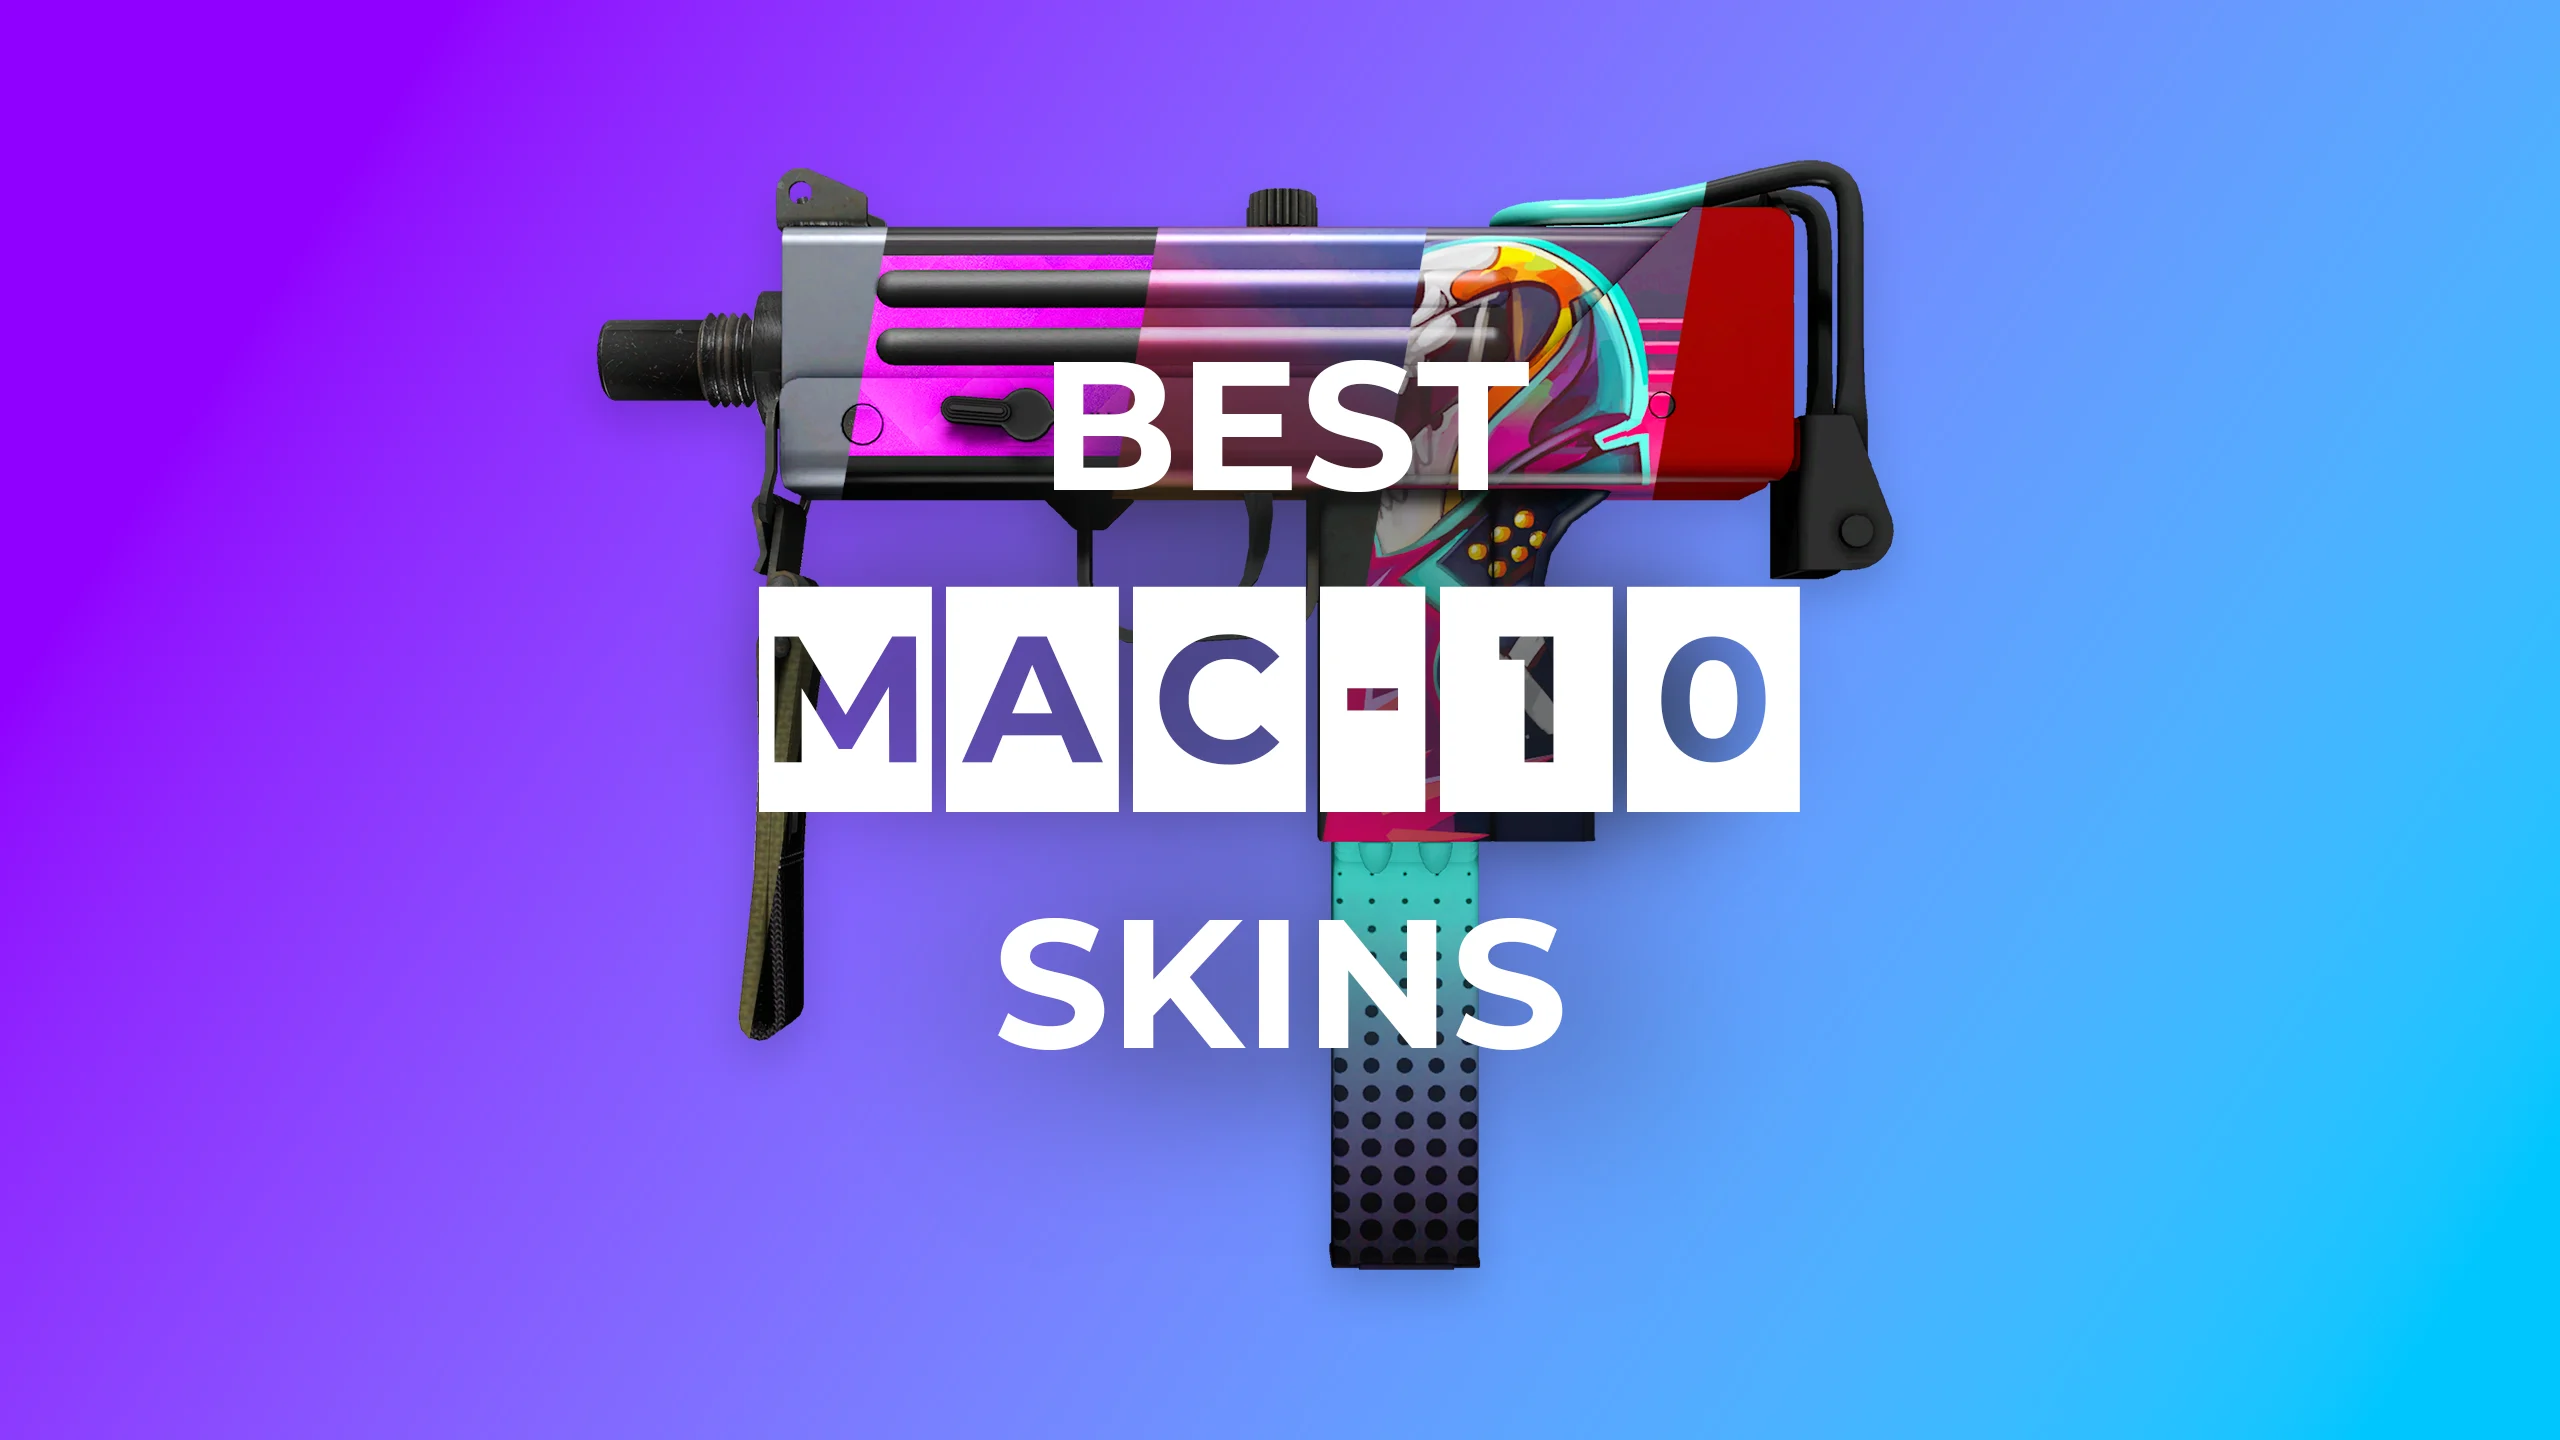 Best MAC-10 Skins 2022